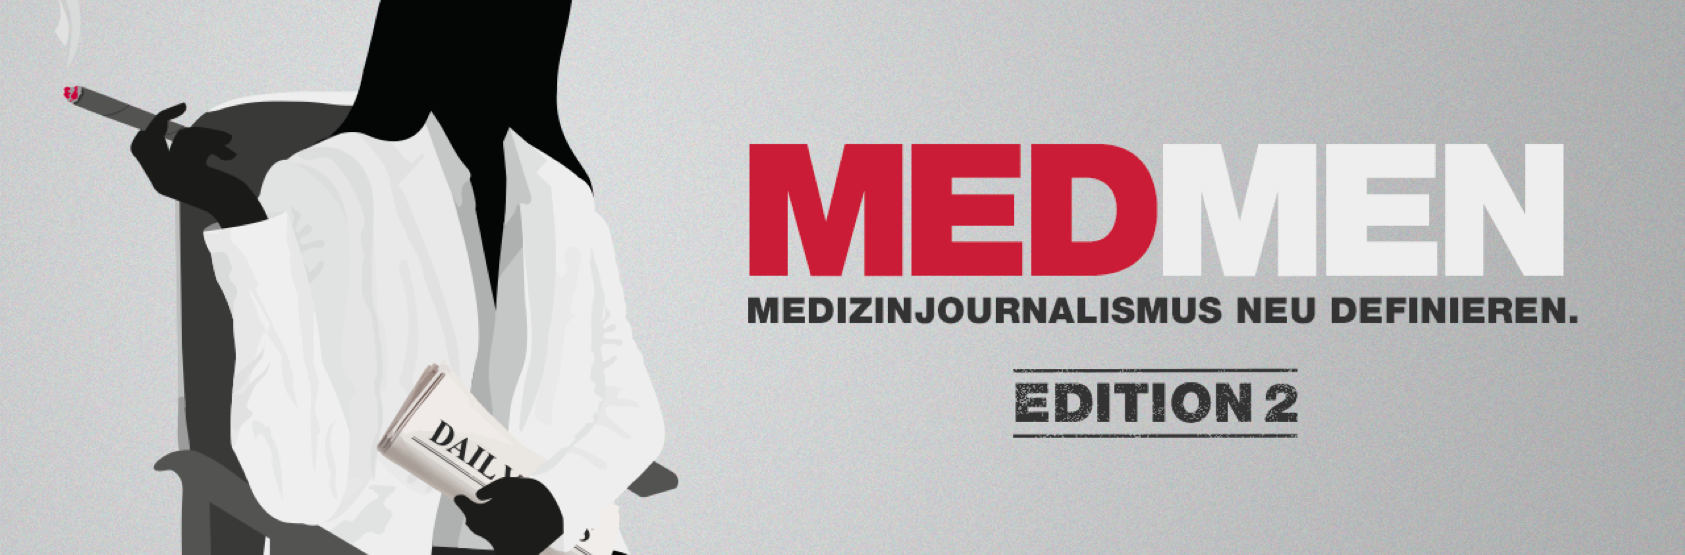 MedMen Edition 2